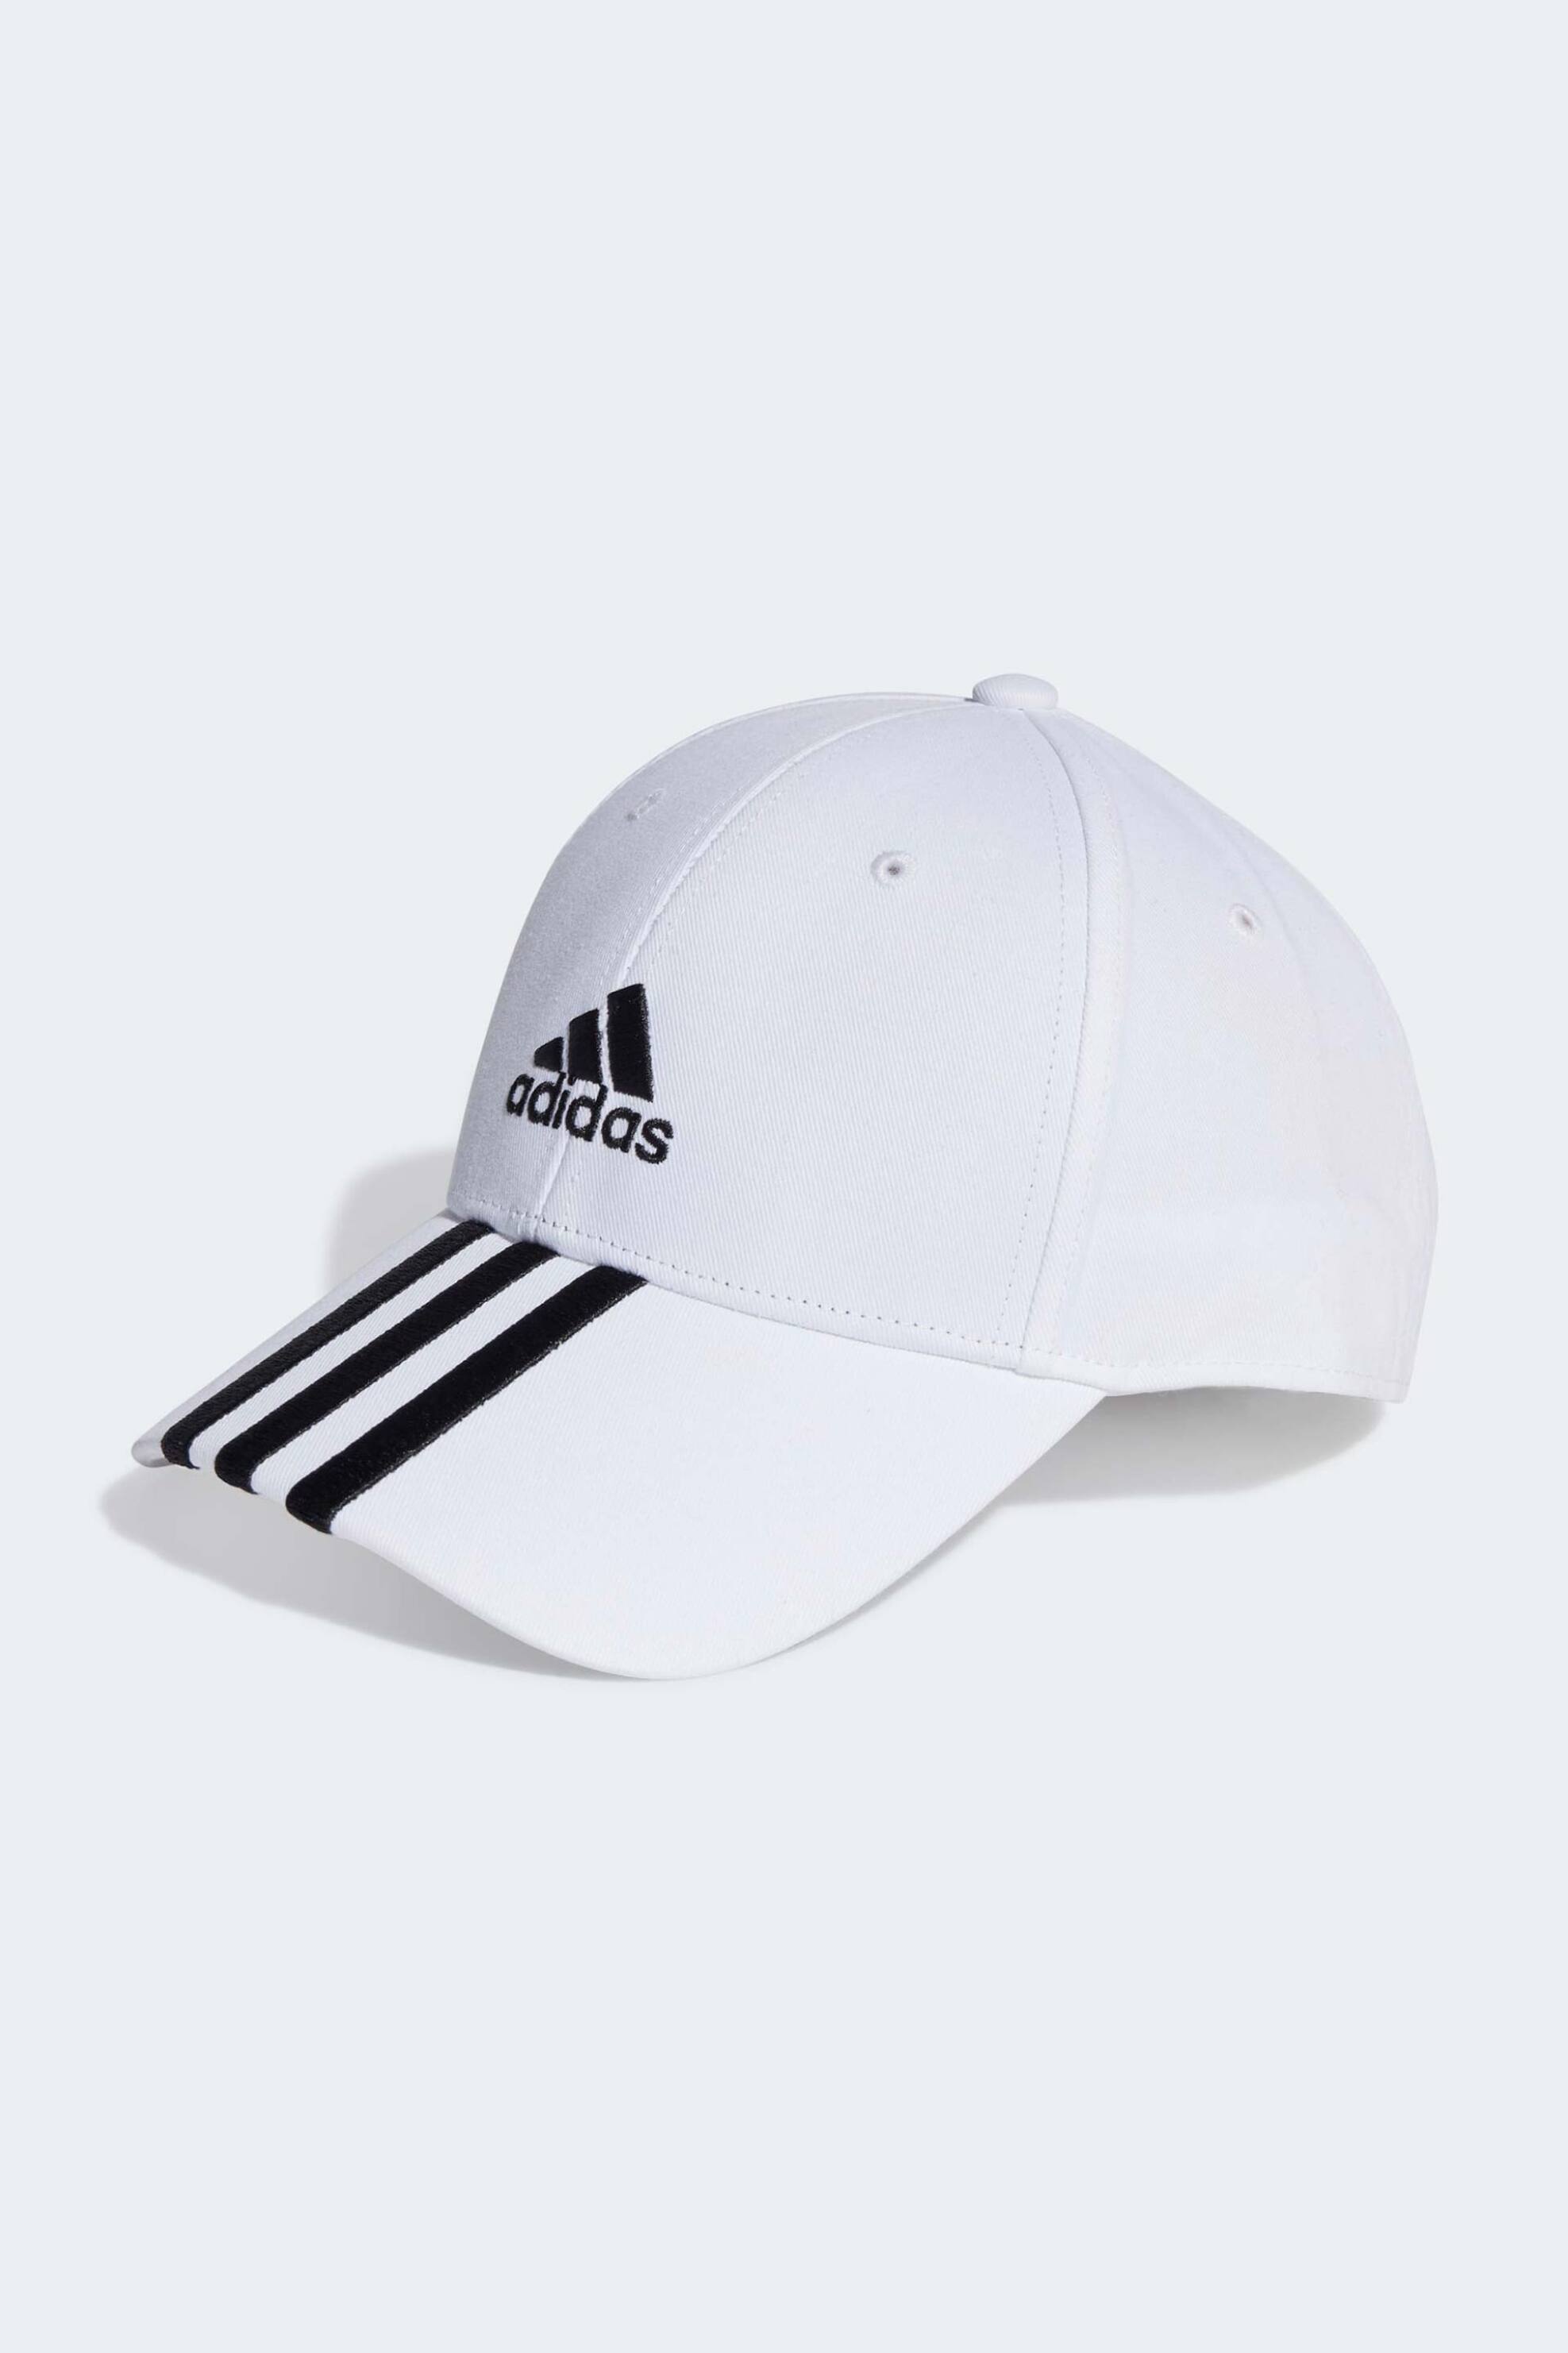 Ανδρική Μόδα > Ανδρικά Αθλητικά > Ανδρικός Aθλητικός Eξοπλισμός > Ανδρικά Αθλητικά Καπέλα Adidas unisex καπέλο "Baseball 3-Stripes" - II3509 Λευκό